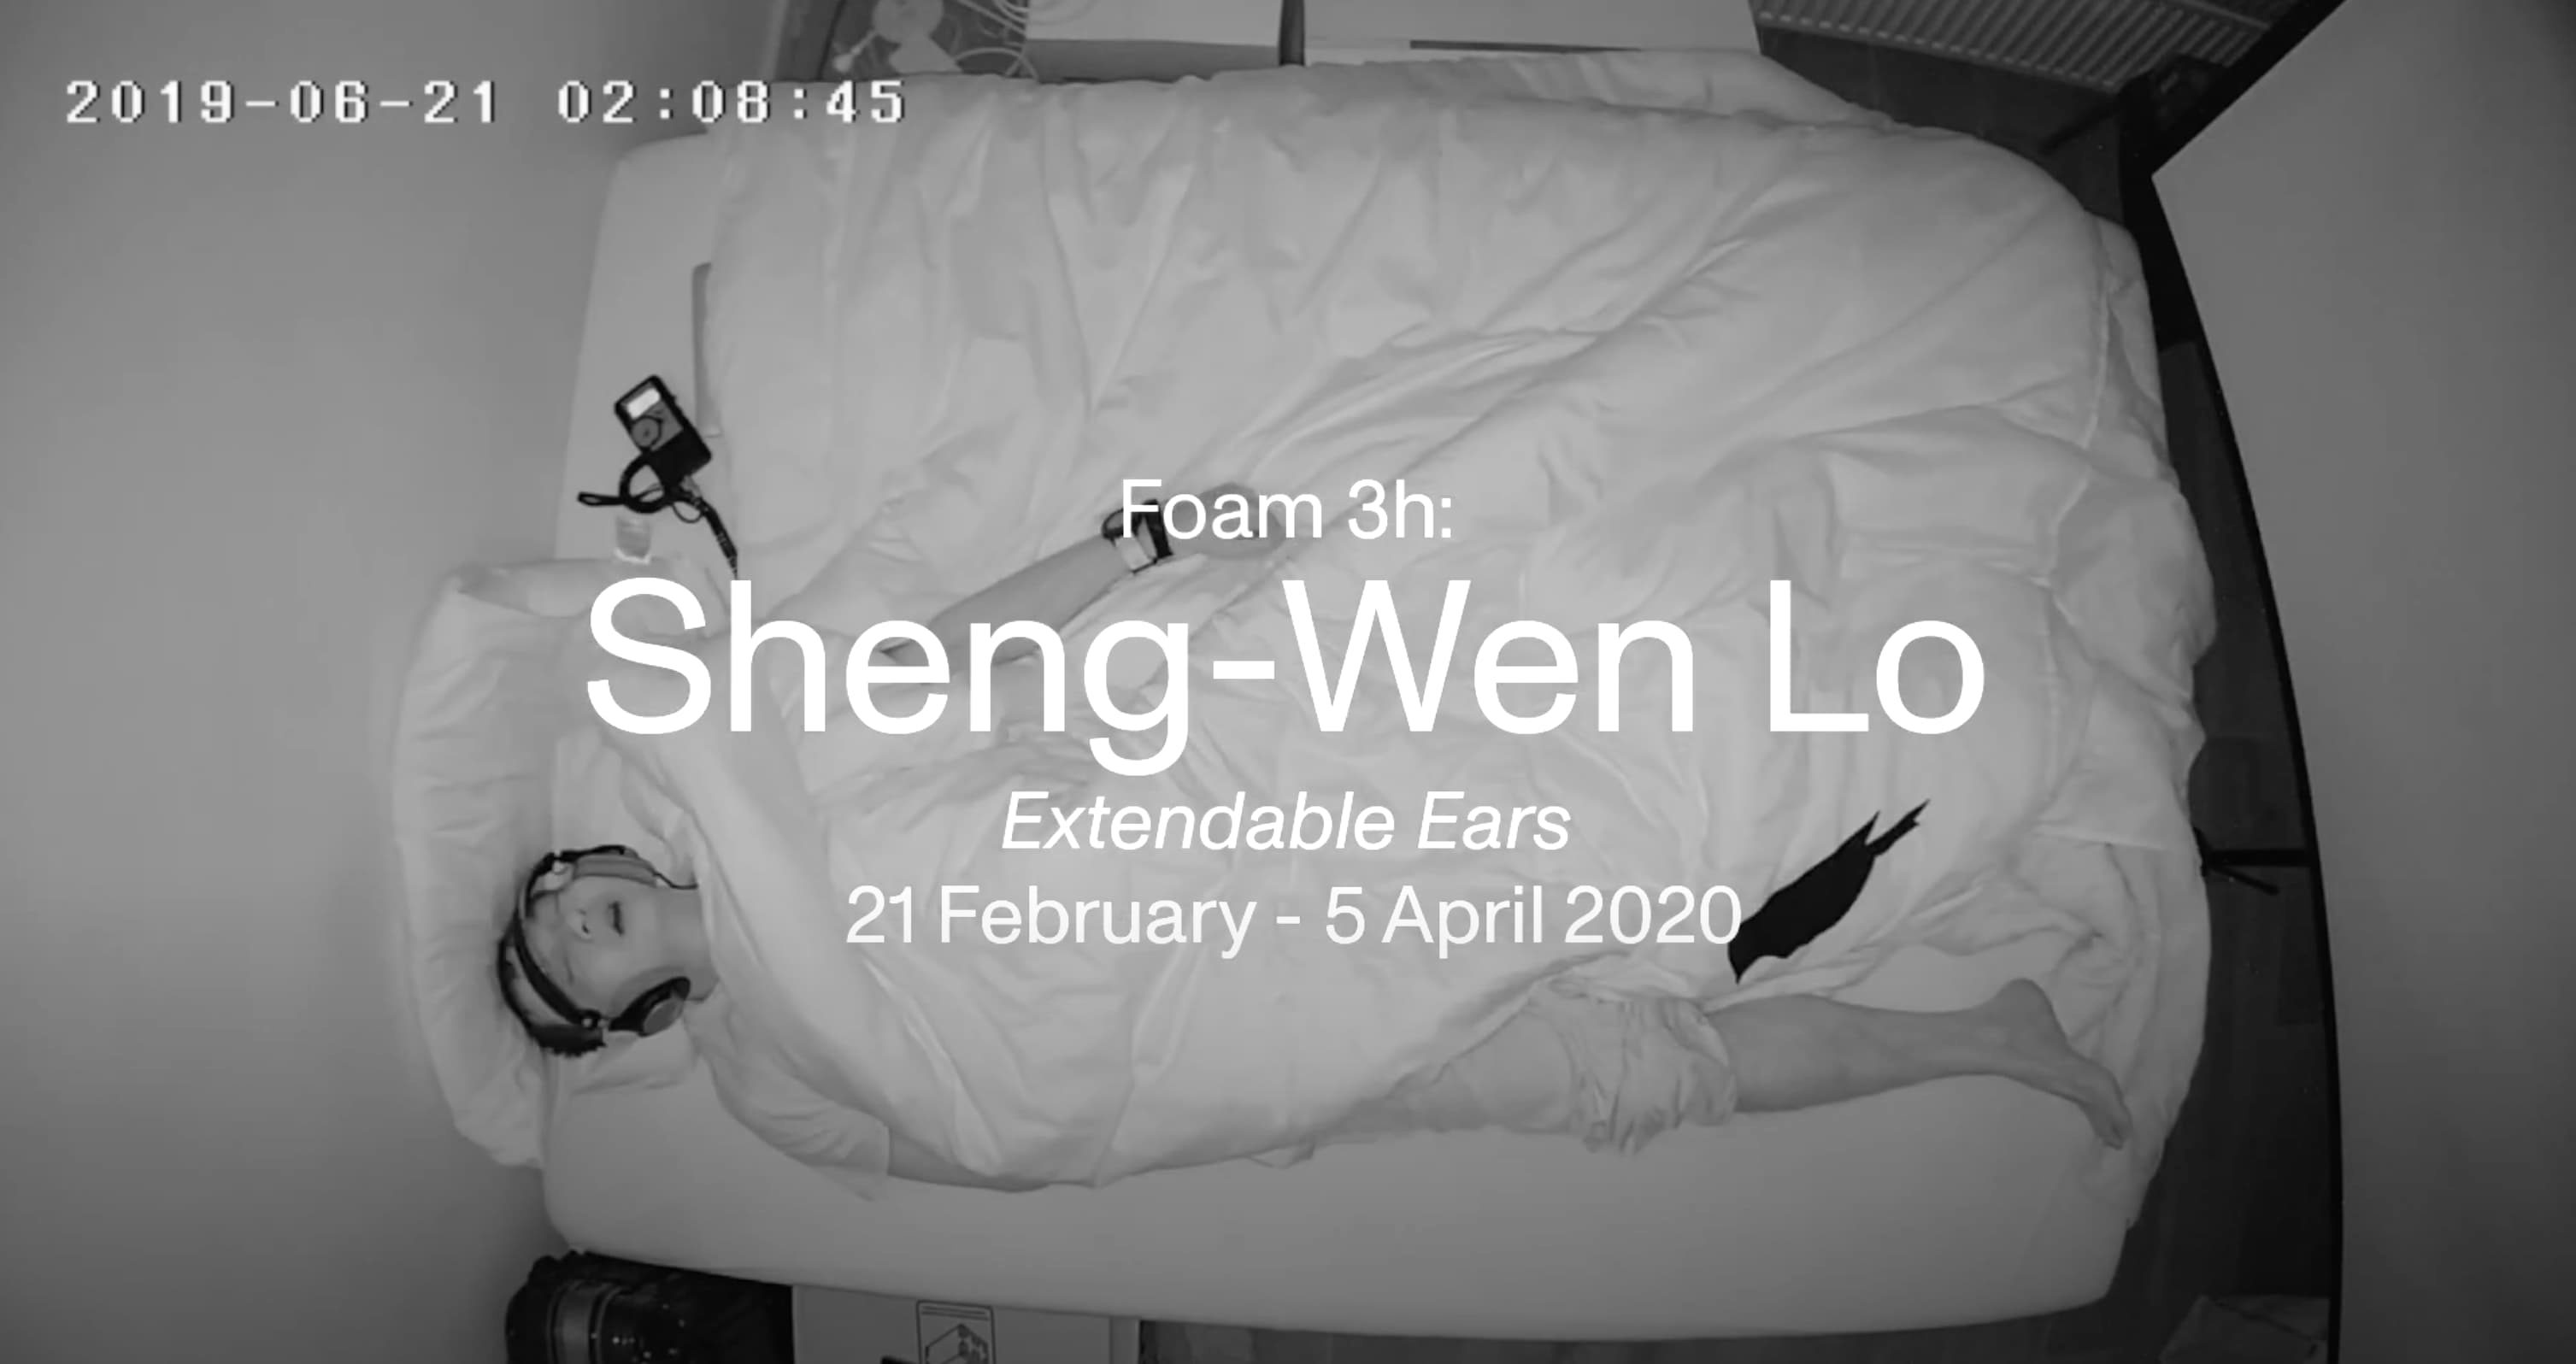 Foam 3h: Sheng-Wen Lo